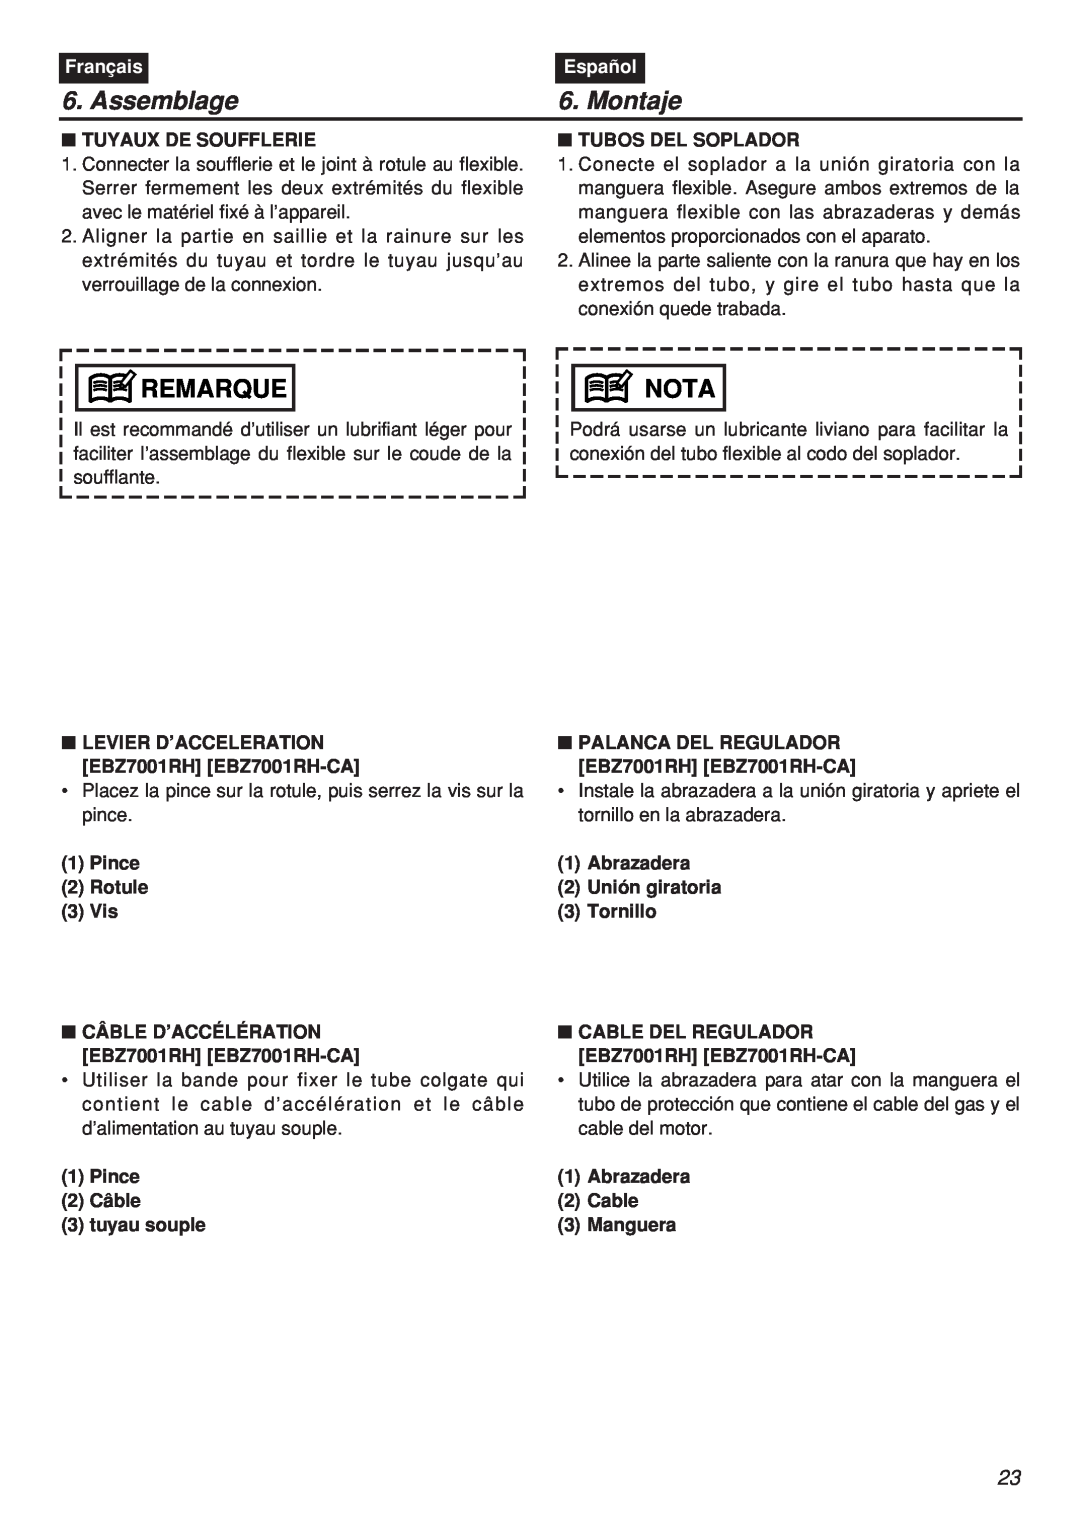 Zenoah EBZ7001-CA manual Assemblage, Montaje, Tuyaux De Soufflerie, Tubos Del Soplador, Remarque, Nota, Français, Español 